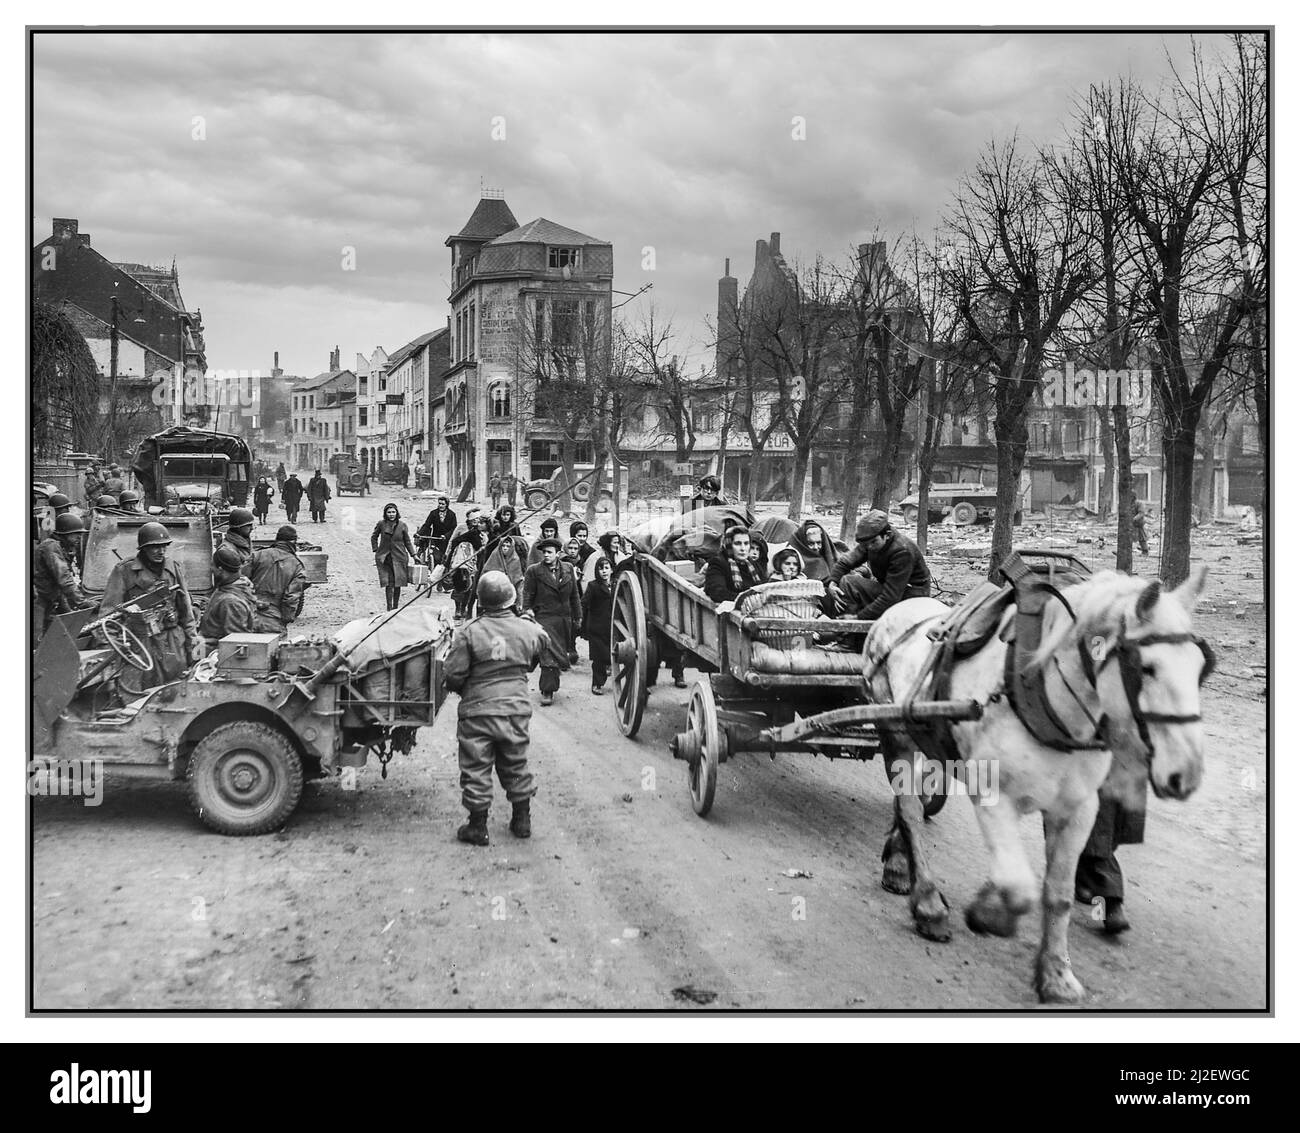 Schlacht von Bastogne WW2 Flüchtlinge evakuieren die belgische Stadt Bastogne Zweiten Weltkrieg US-Truppen halten die Stadt gegen die heftigen Machtstrupps des Nazi-Deutschlands Feind. Als Hommage an die heldenhaften Heldentaten der amerikanischen Streitkräfte hat Bastogne zu Ehren von Date 1944 Zweiter Weltkrieg Gedenkstätten errichtet Stockfoto